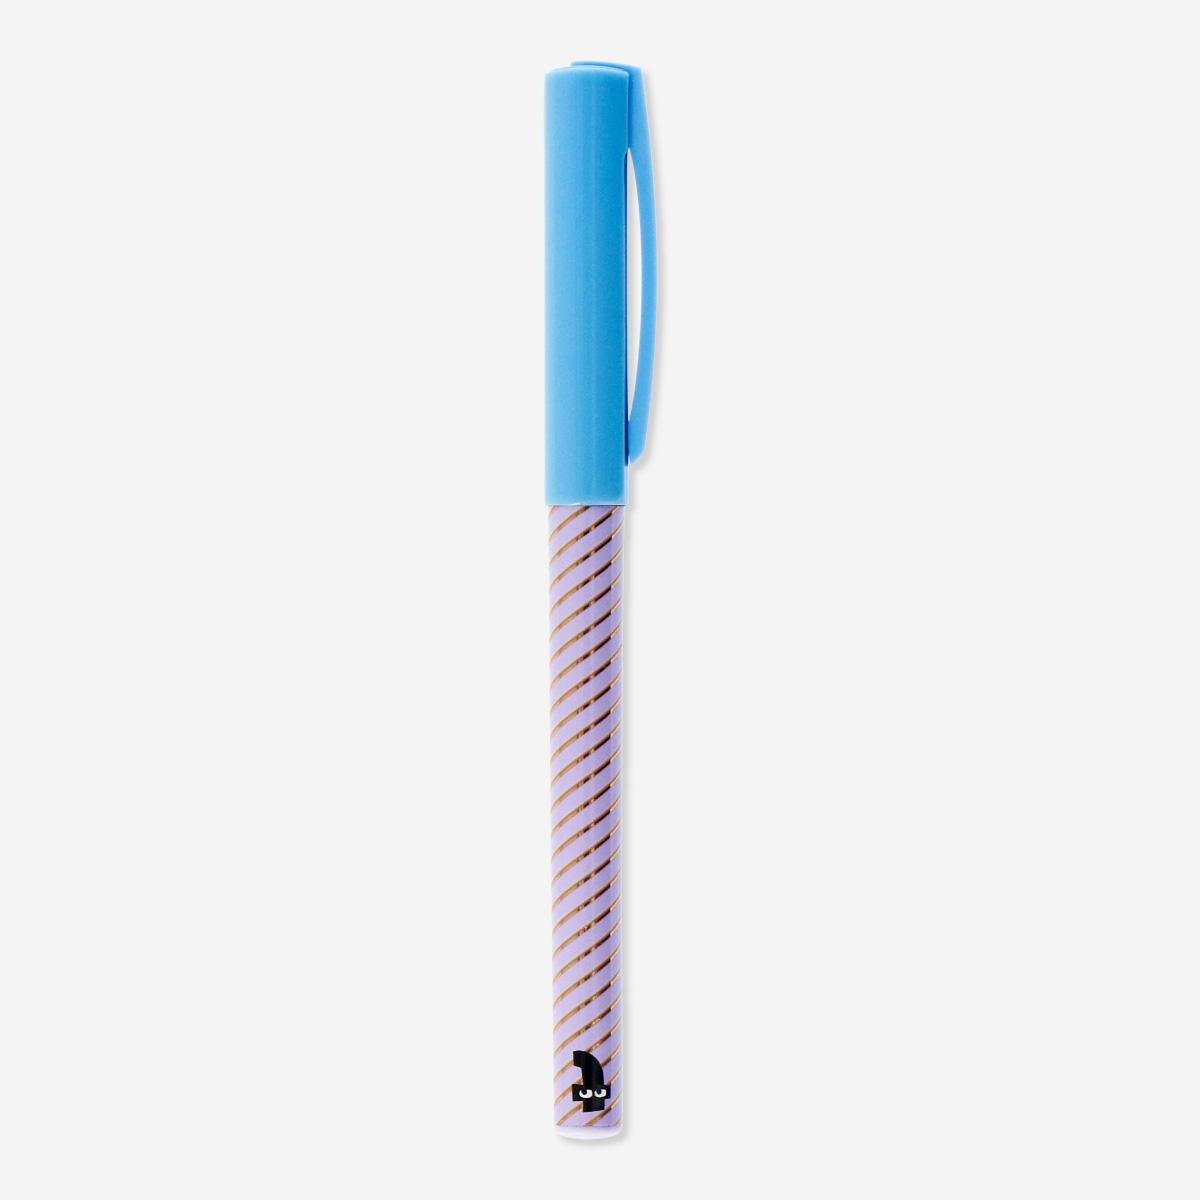 Purple rollerball pen